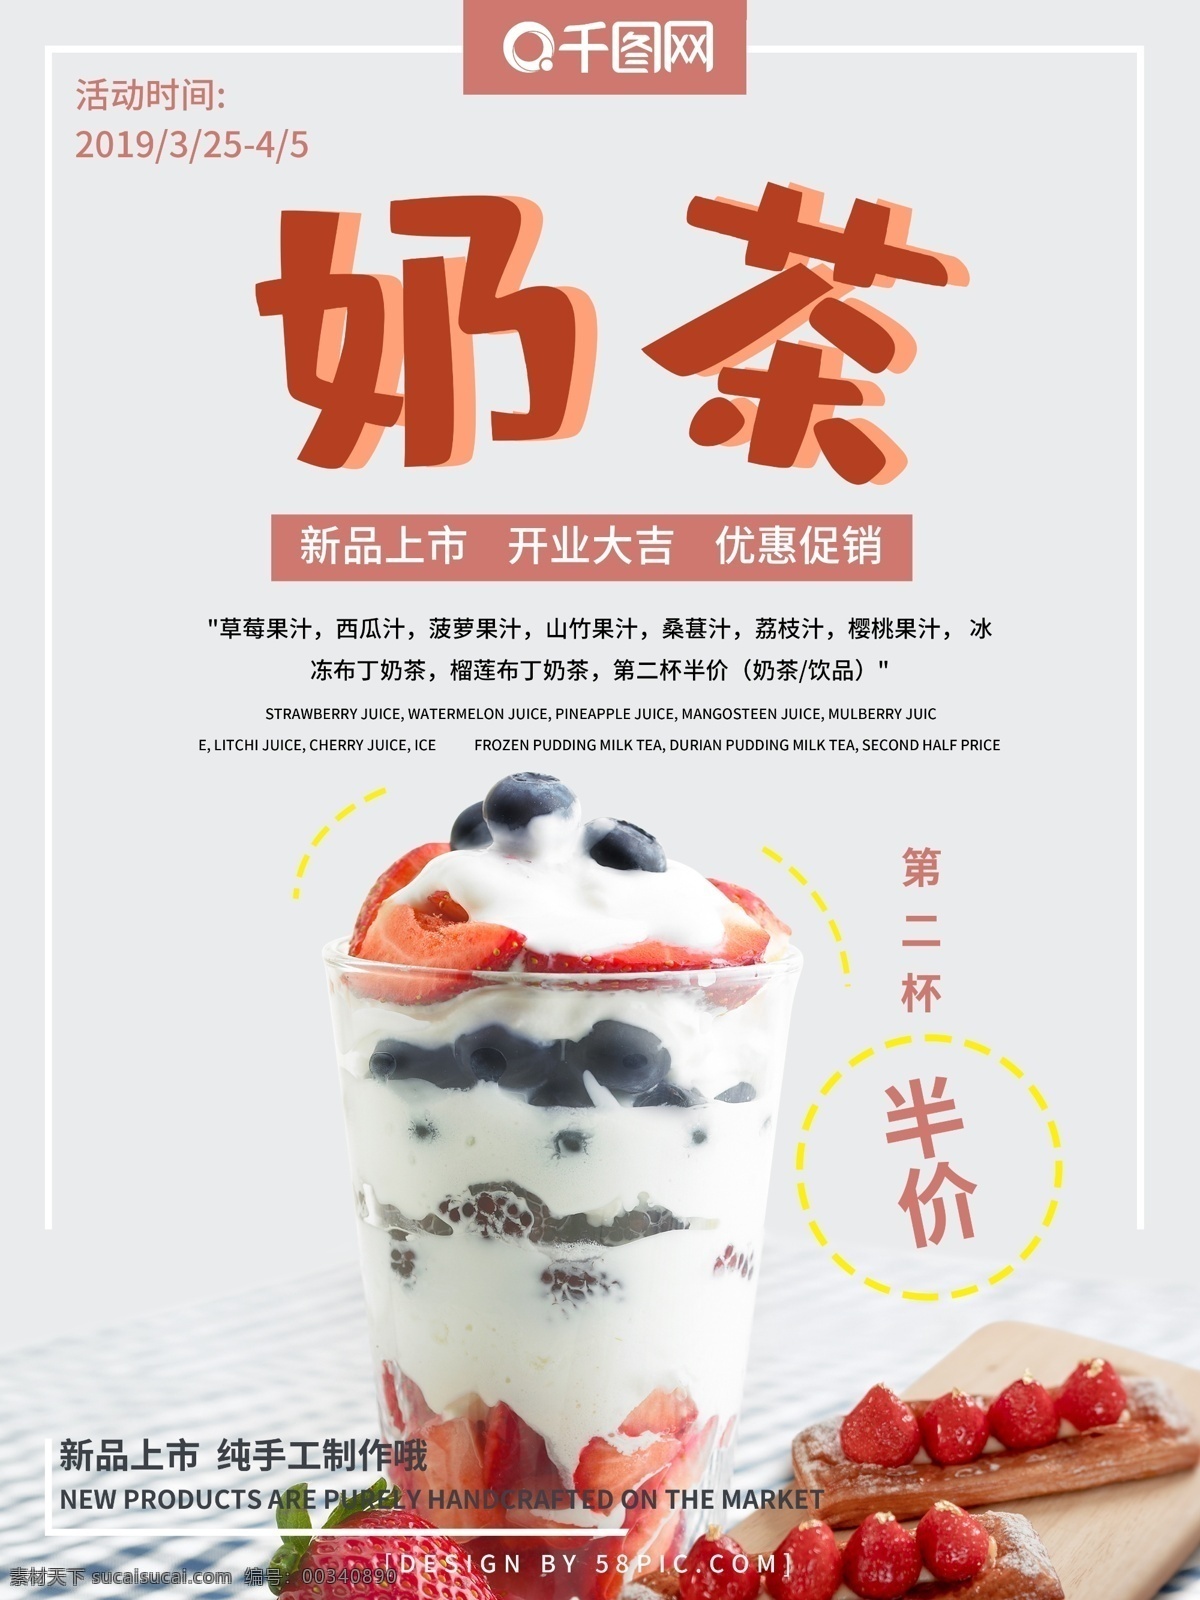 奶茶店 开业 宣传海报 奶茶 草莓 果汁 海报